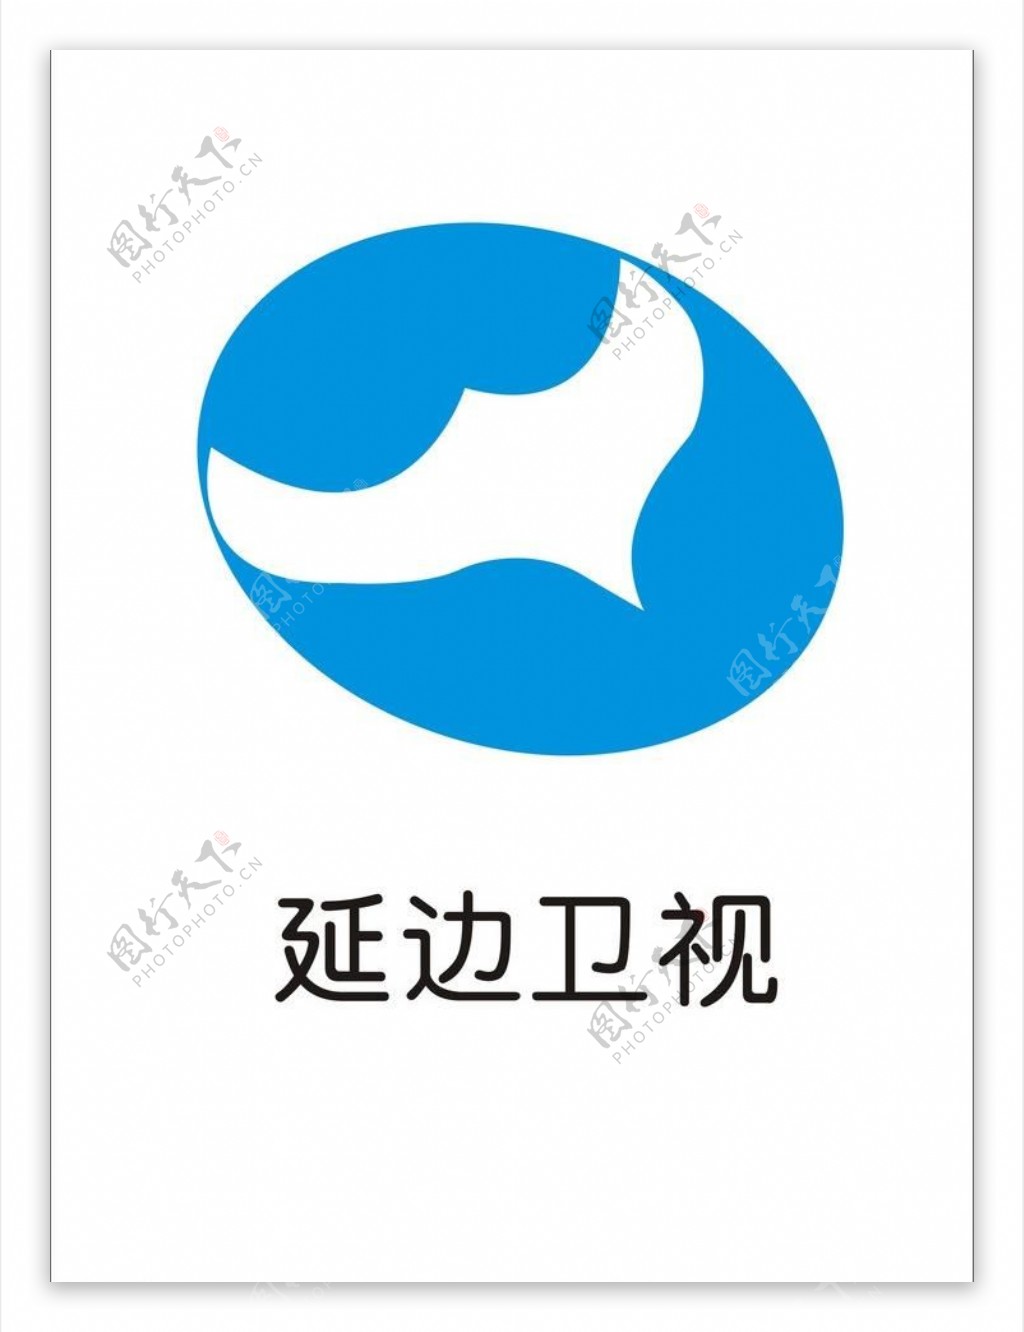 延边卫视标志logo图片